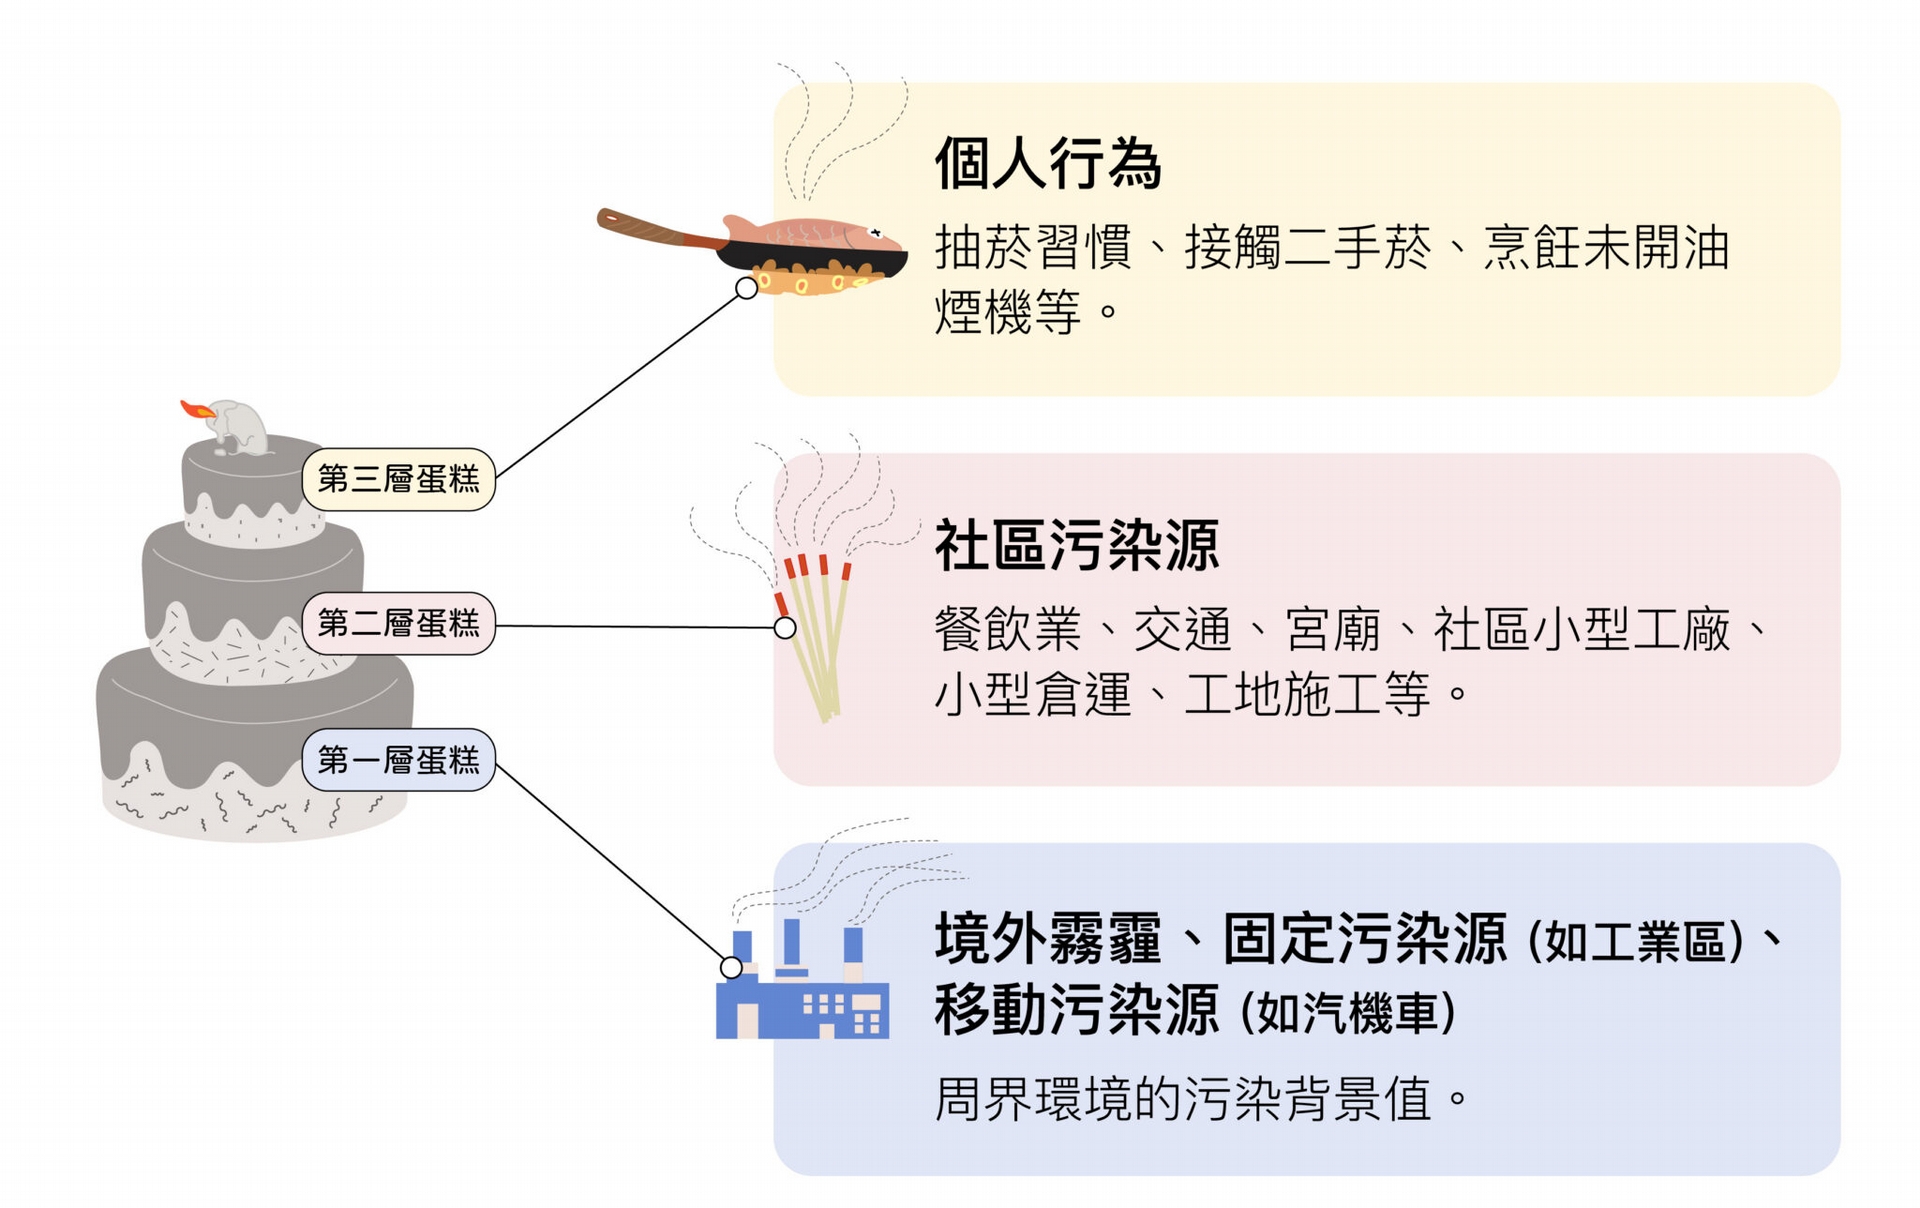 龍世俊以三層蛋糕來比喻 PM2.5 的暴露風險。 圖│研之有物 